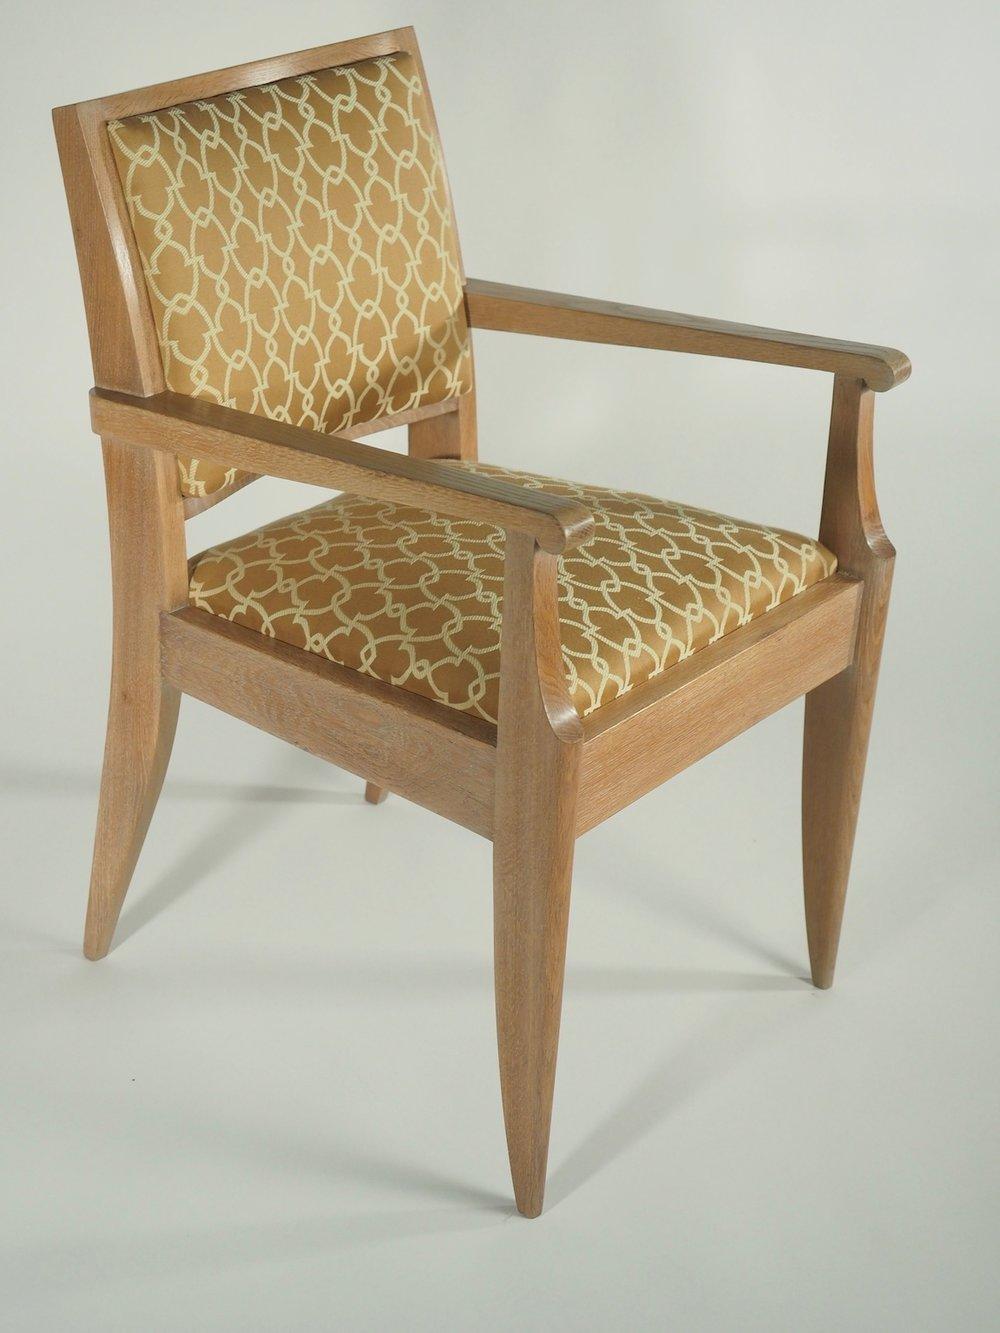 Französische Sessel aus der Mitte des späten Art déco, um 1950, von Dominique in Eiche. Korrekt restauriert, aufgearbeitet und neu gepolstert.